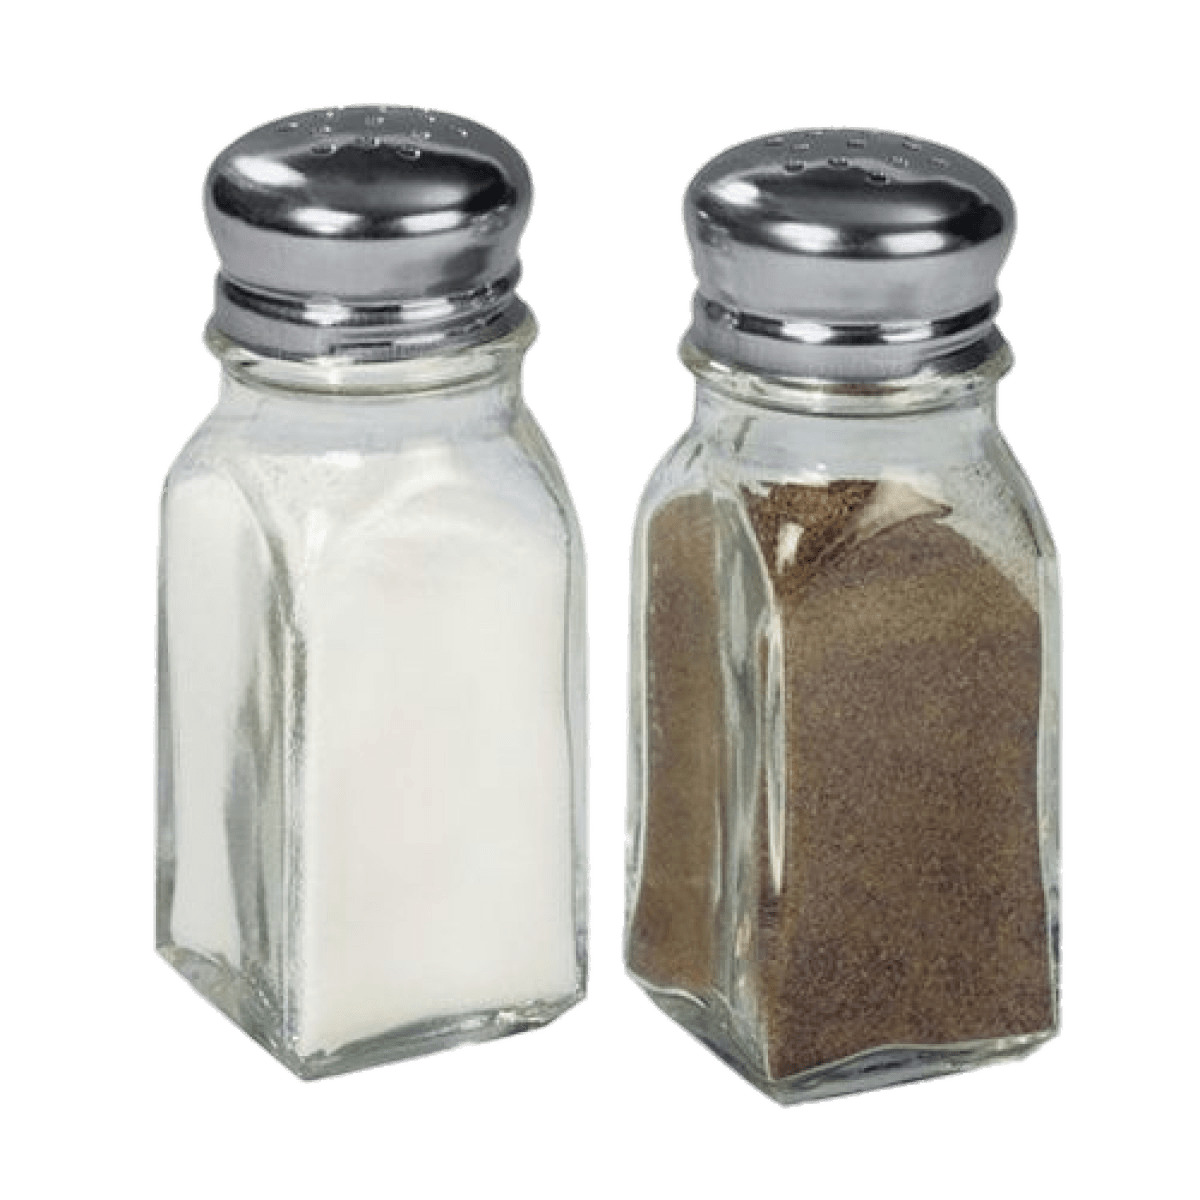 Full Salt and Pepper Dispenser Set png icons